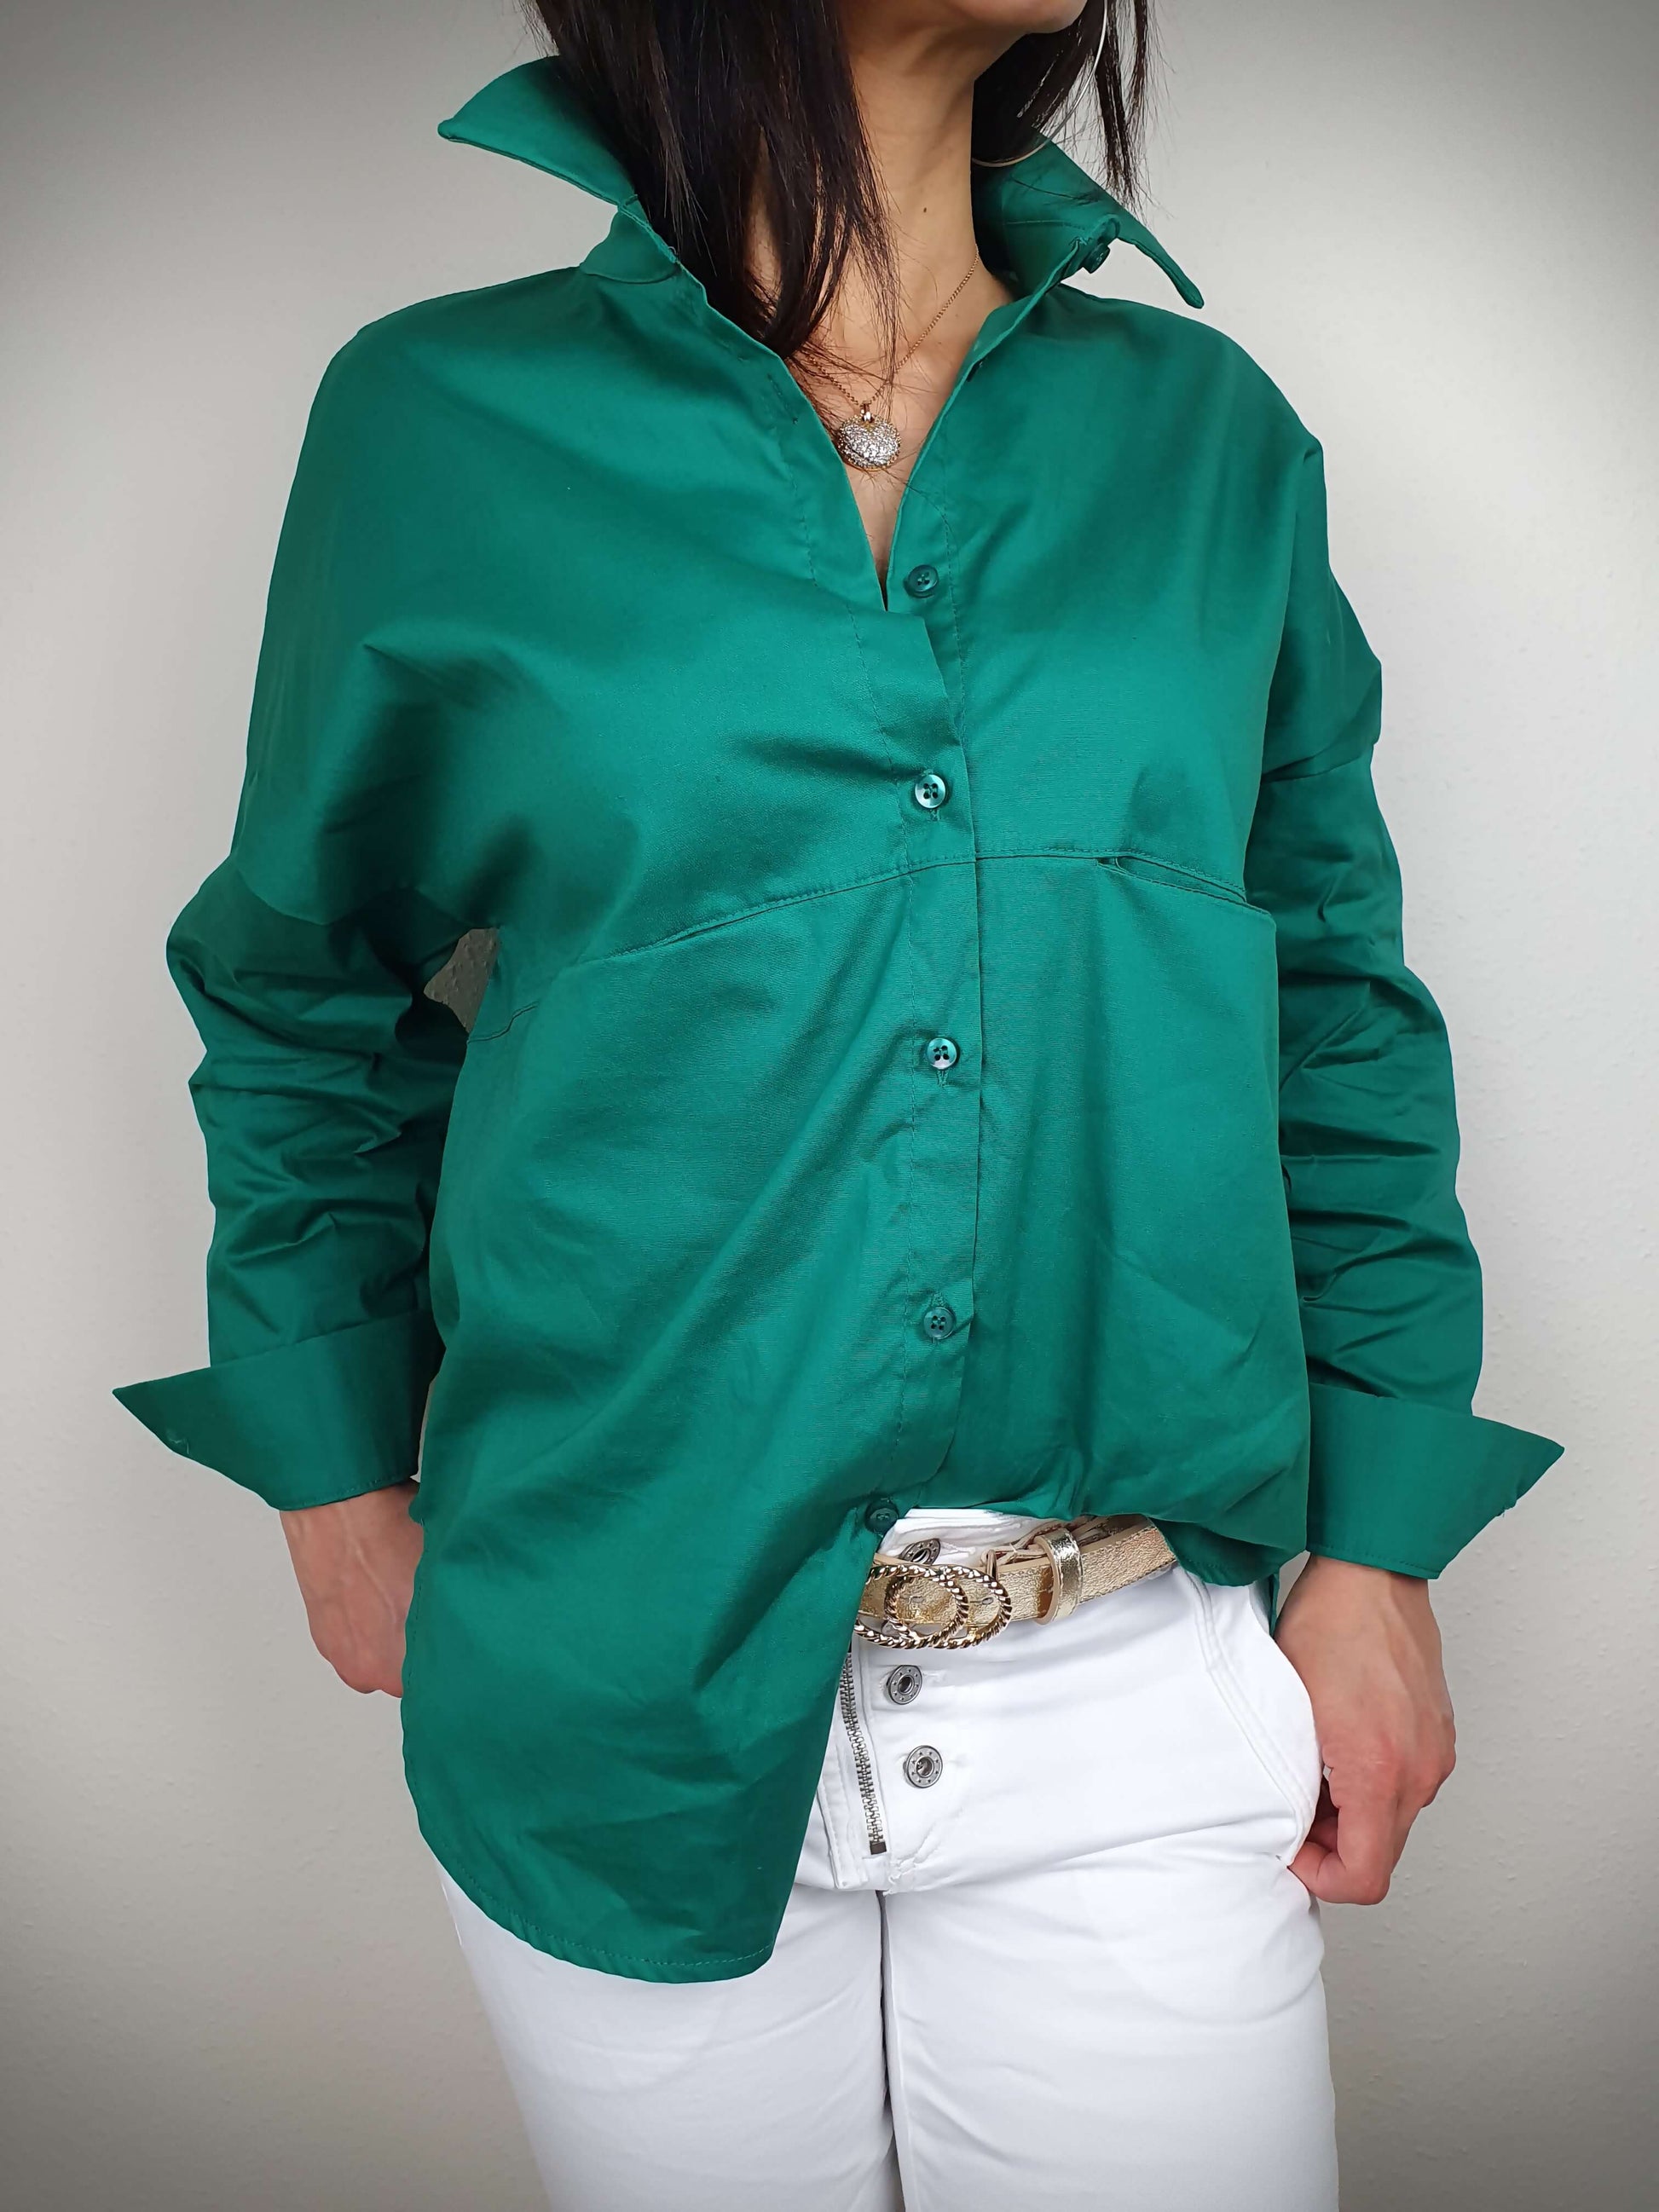 Chemise verte manches longues à decouvrir sur www.gayano.fr